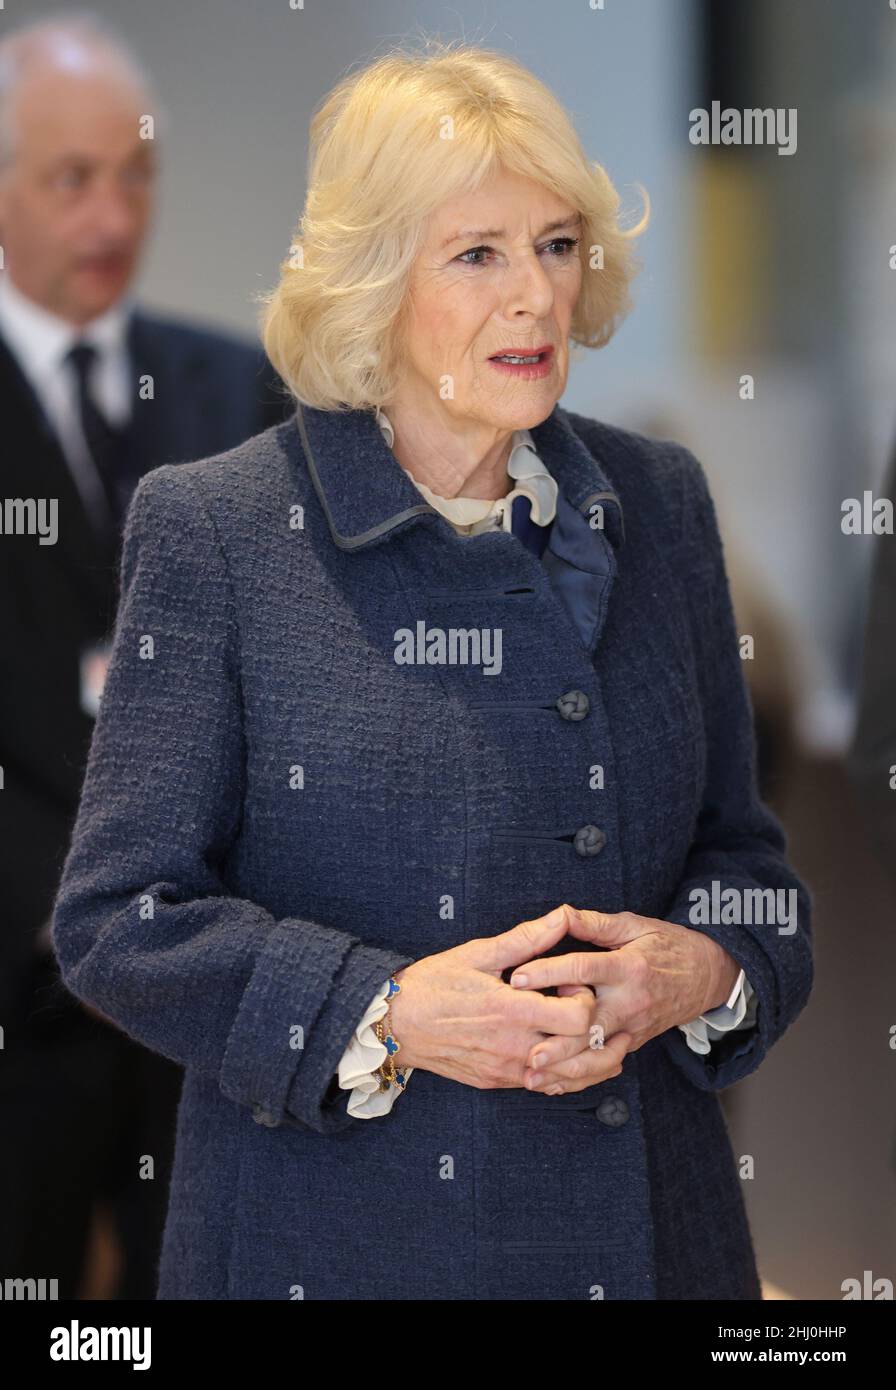 La duchesse de Cornwall lors d'une visite à la bibliothèque Bodleian de l'Université d'Oxford.Date de la photo: Mercredi 26 janvier 2022. Banque D'Images